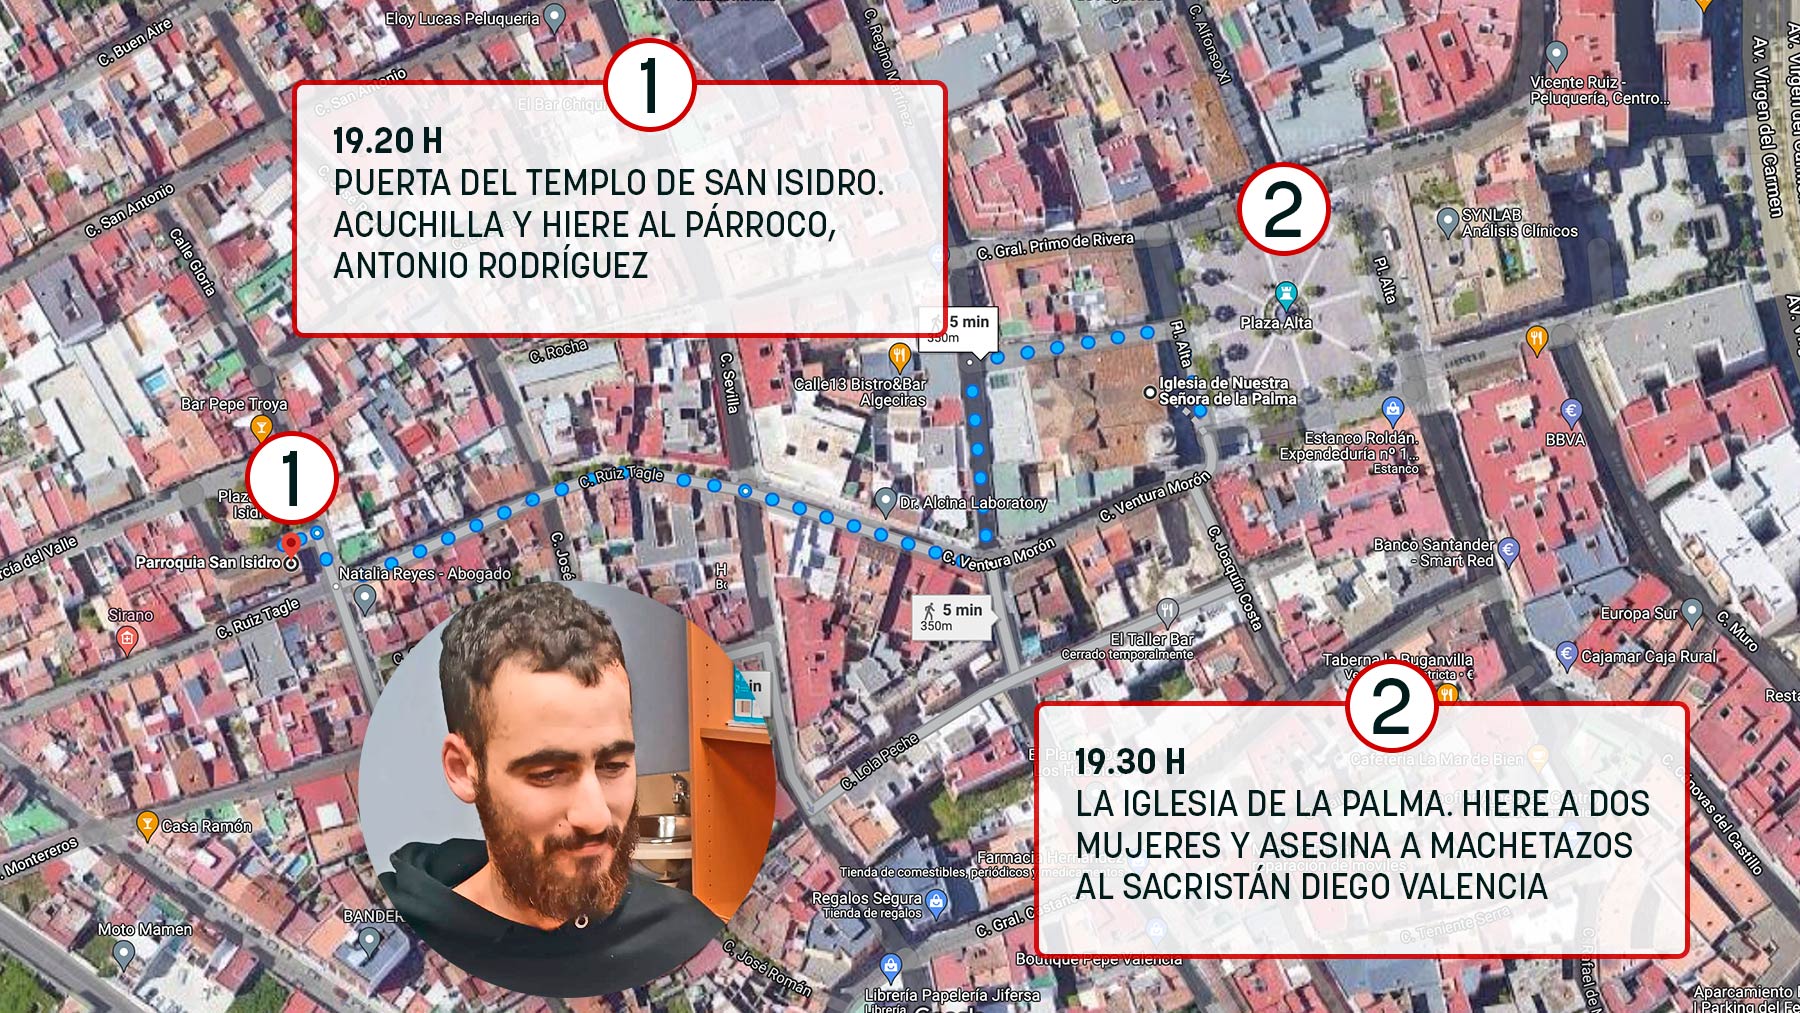 Así fue el ataque yihadista de Algeciras: el magrebí tiró cruces e imágenes en una capilla antes de matar.